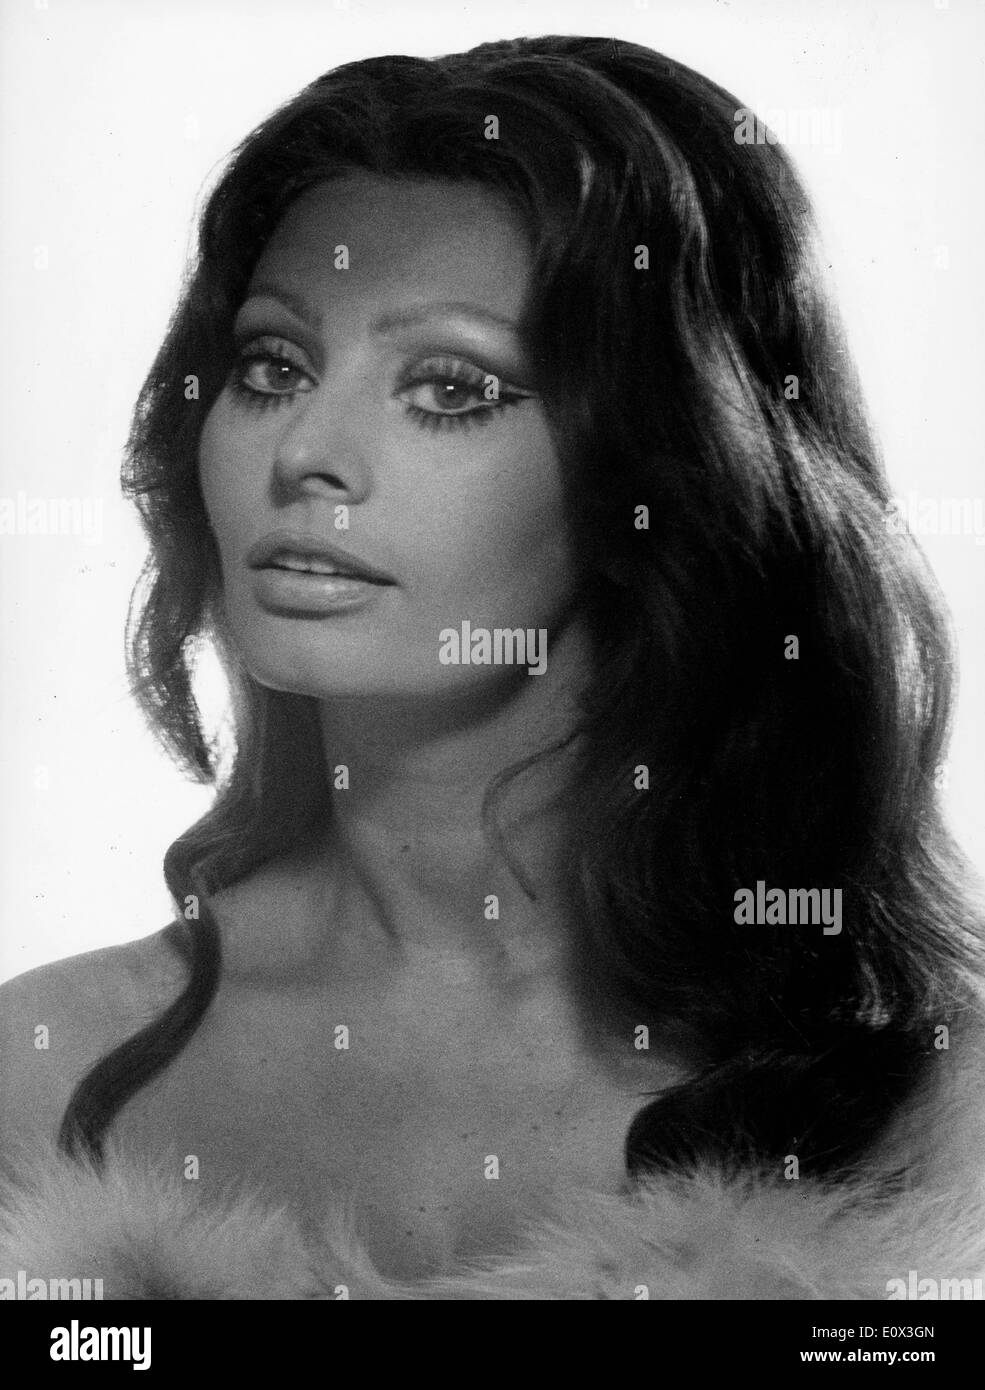 Portrait of actress Sophia Loren Stock Photo